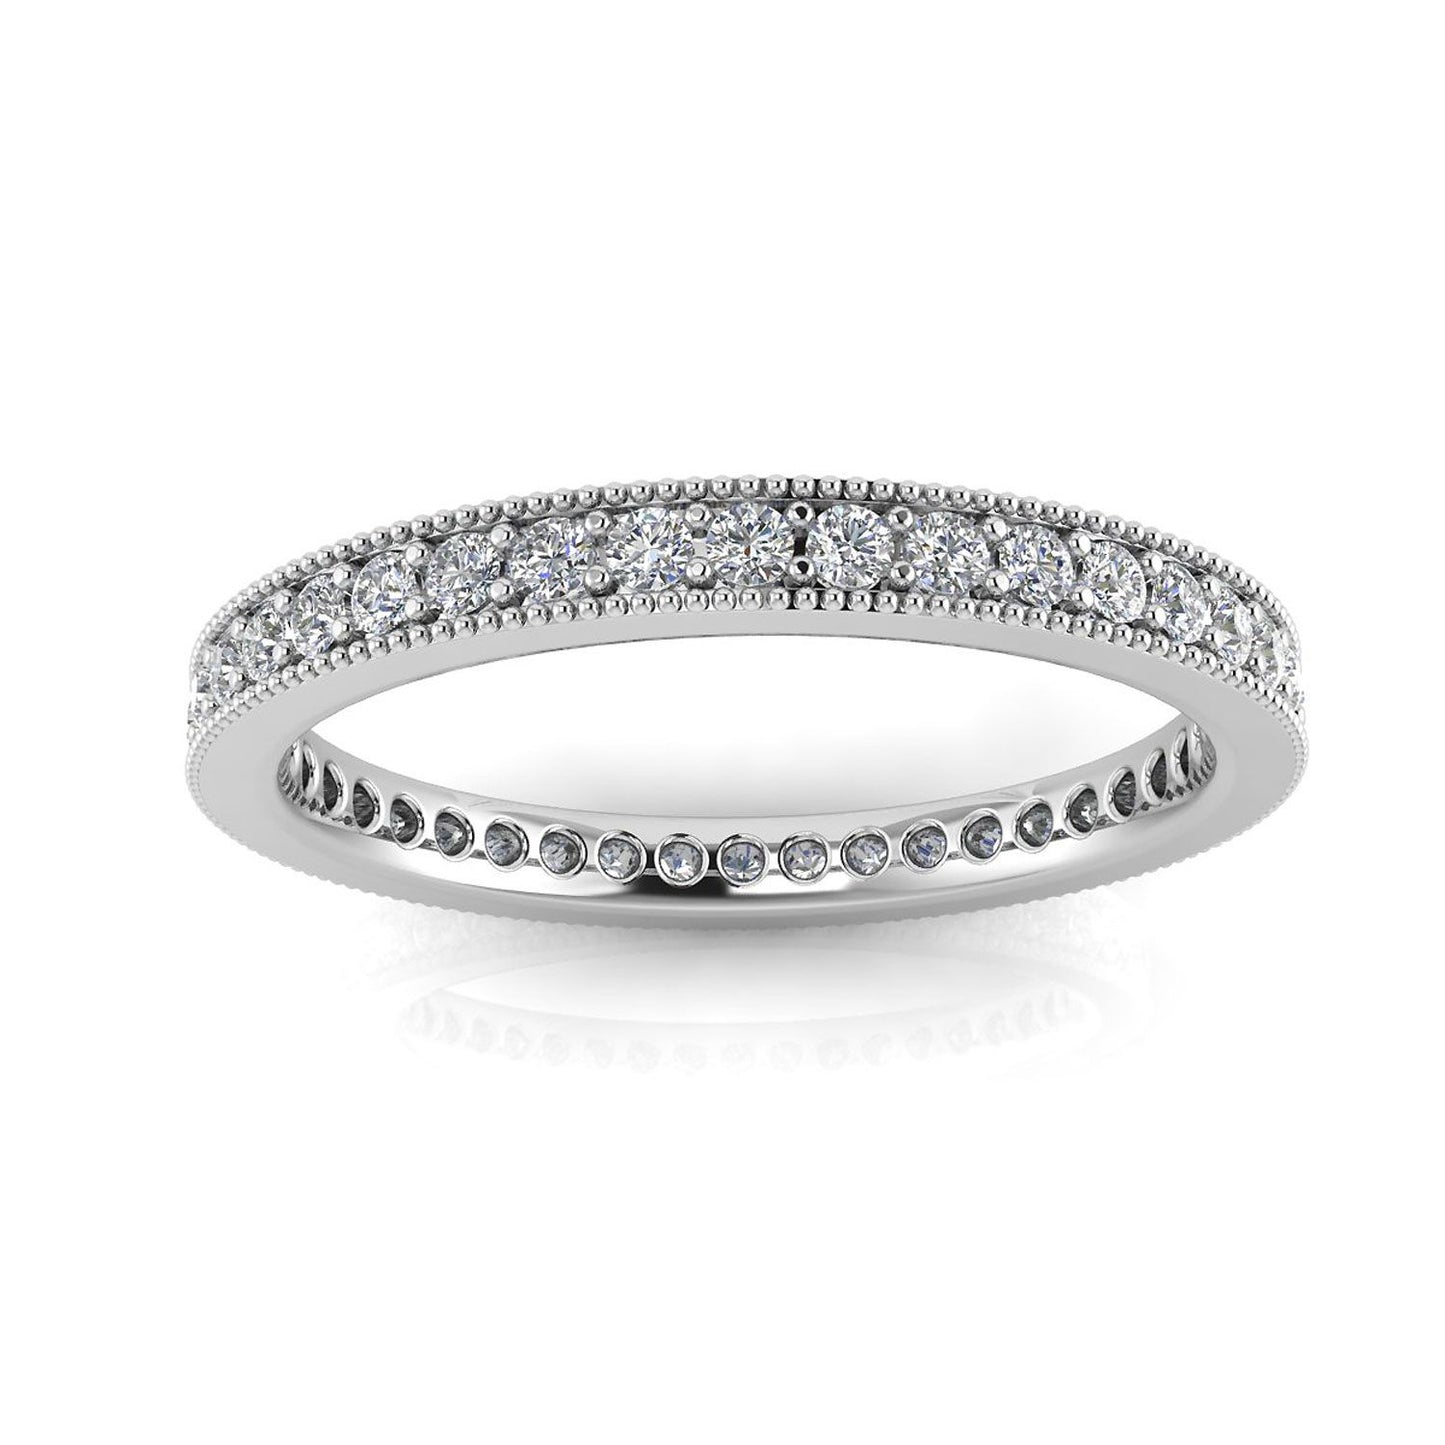 Round Brilliant Cut Diamond Pave & Milgrain Set Eternity Ring In Platinum  (0.5ct. Tw.) Ring Size 7.5